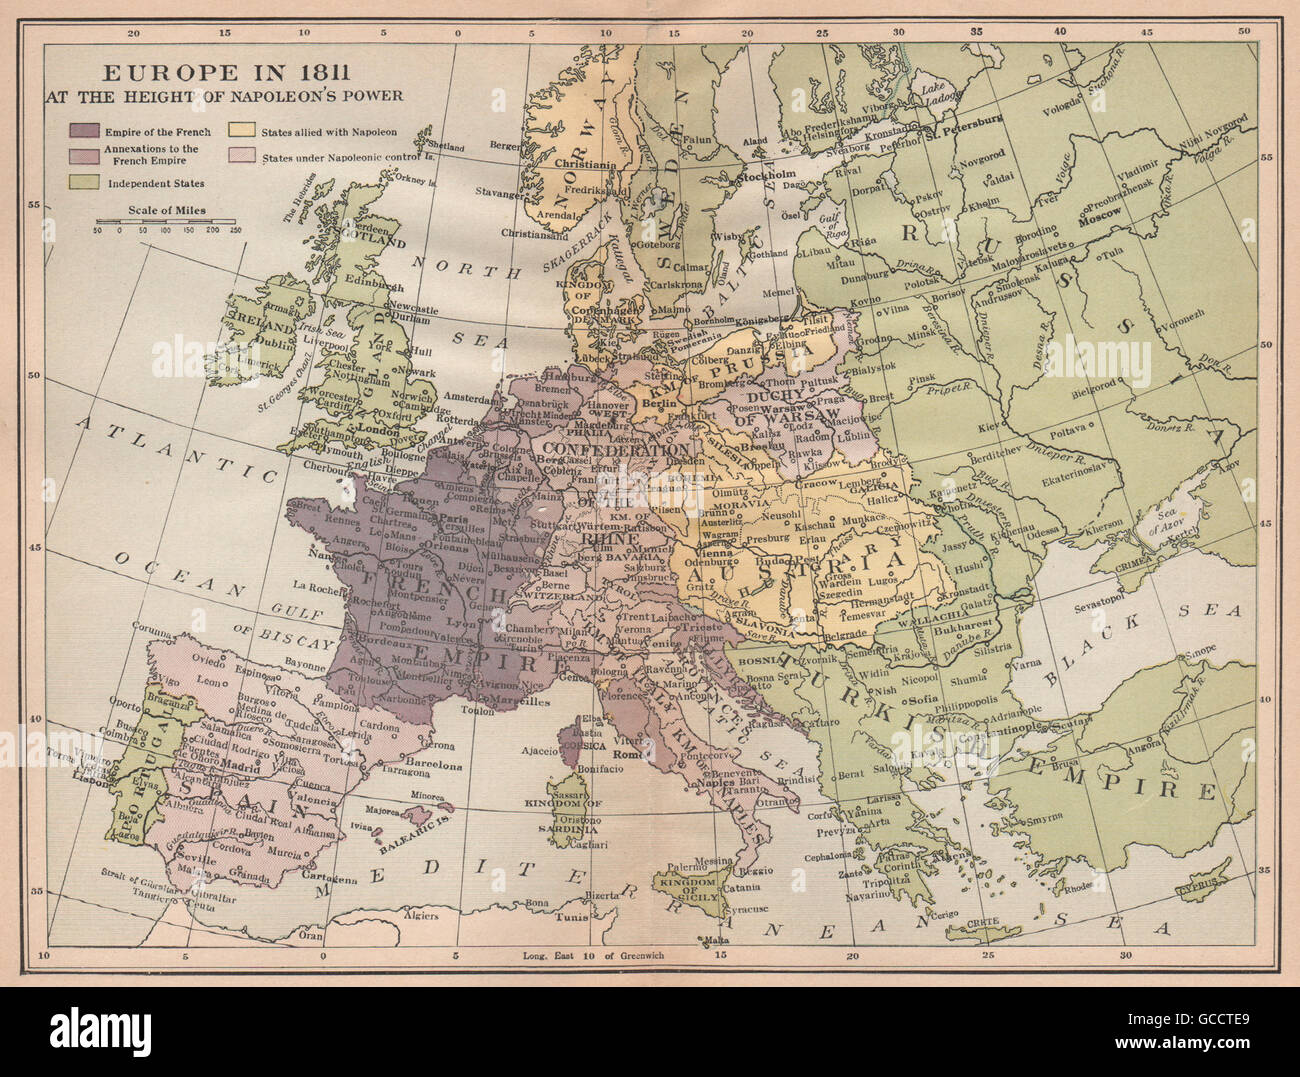 Europa im 1811.French Reich annektierten Gebiet & Verbündeten. Napoleons Apex 1917 Karte Stockfoto